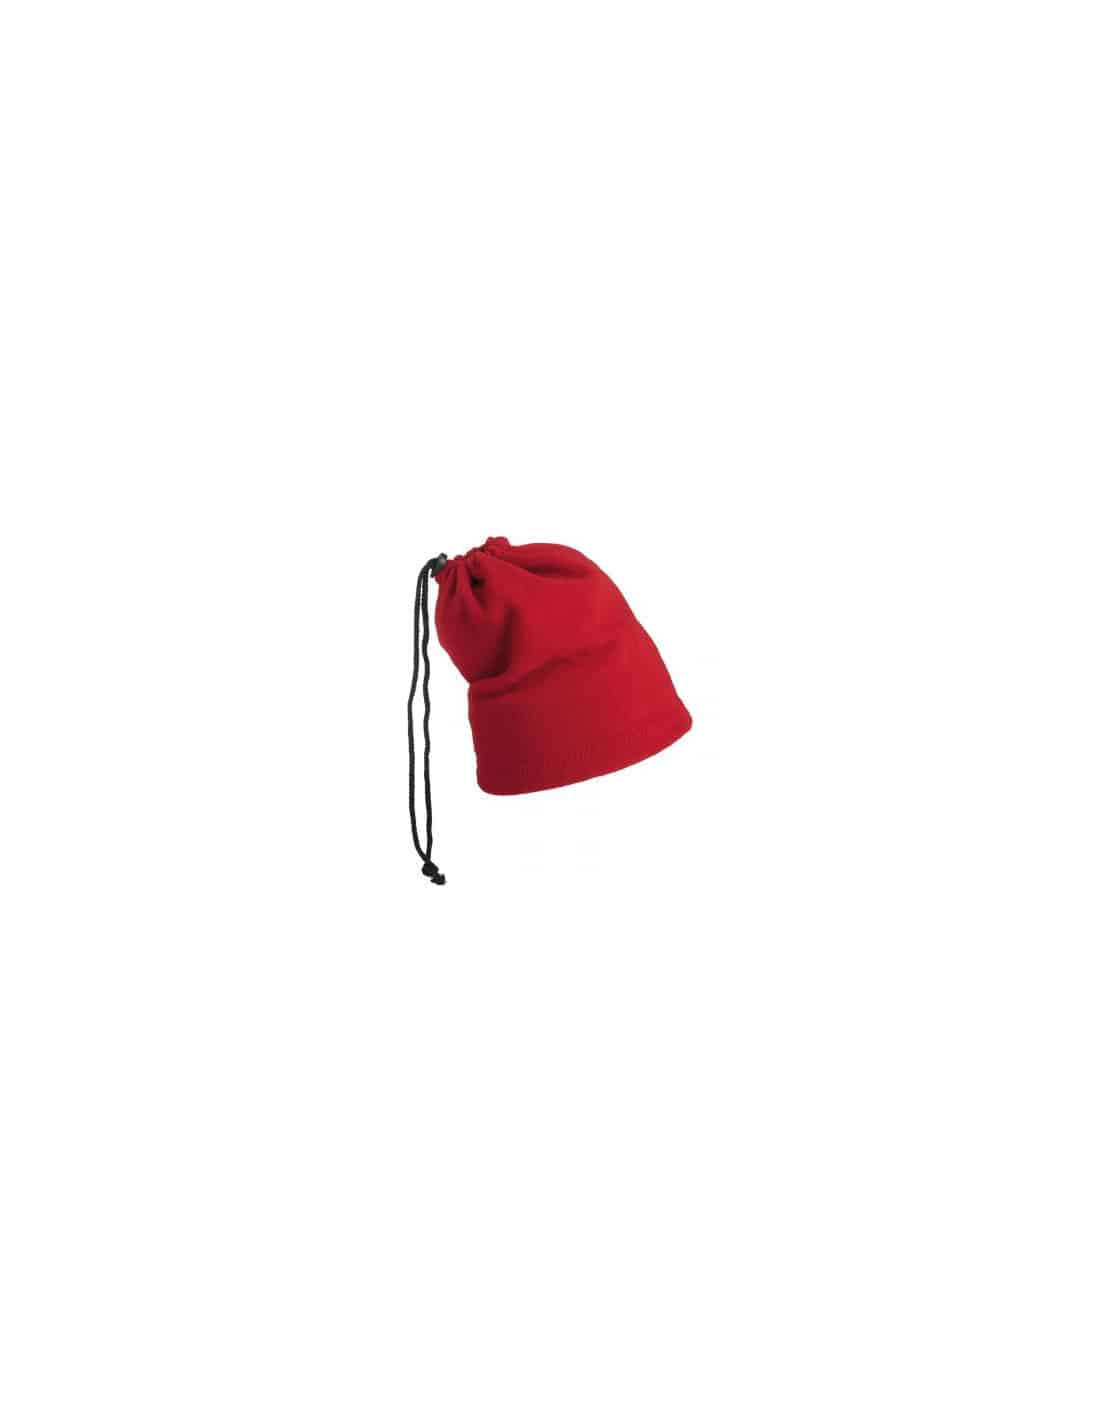 Bonnet tube rouge en polaire mode, bonnet snood homme femme livré 48h!